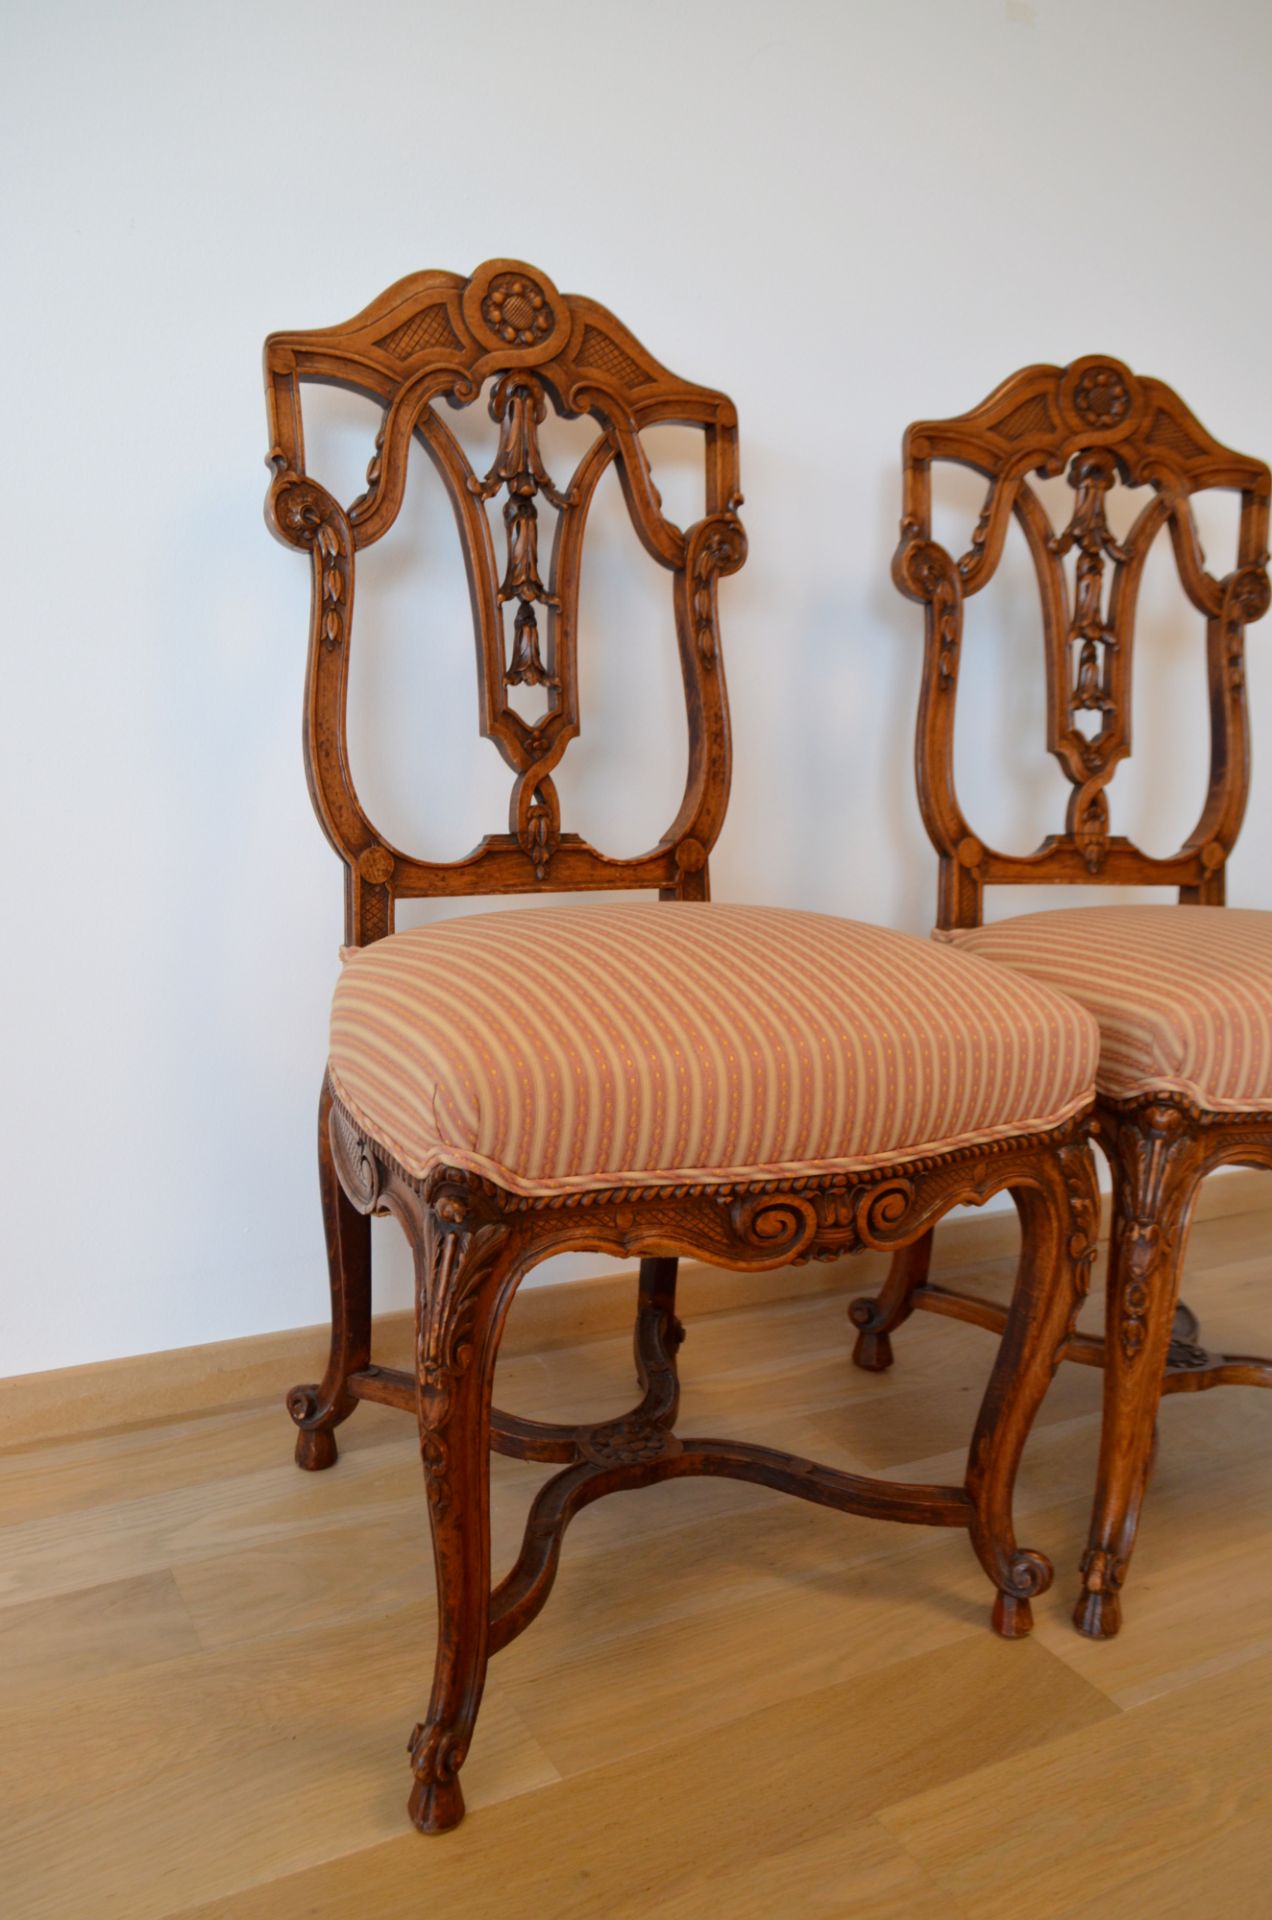 Paire de chaise sculpté style régence - Image 2 of 2